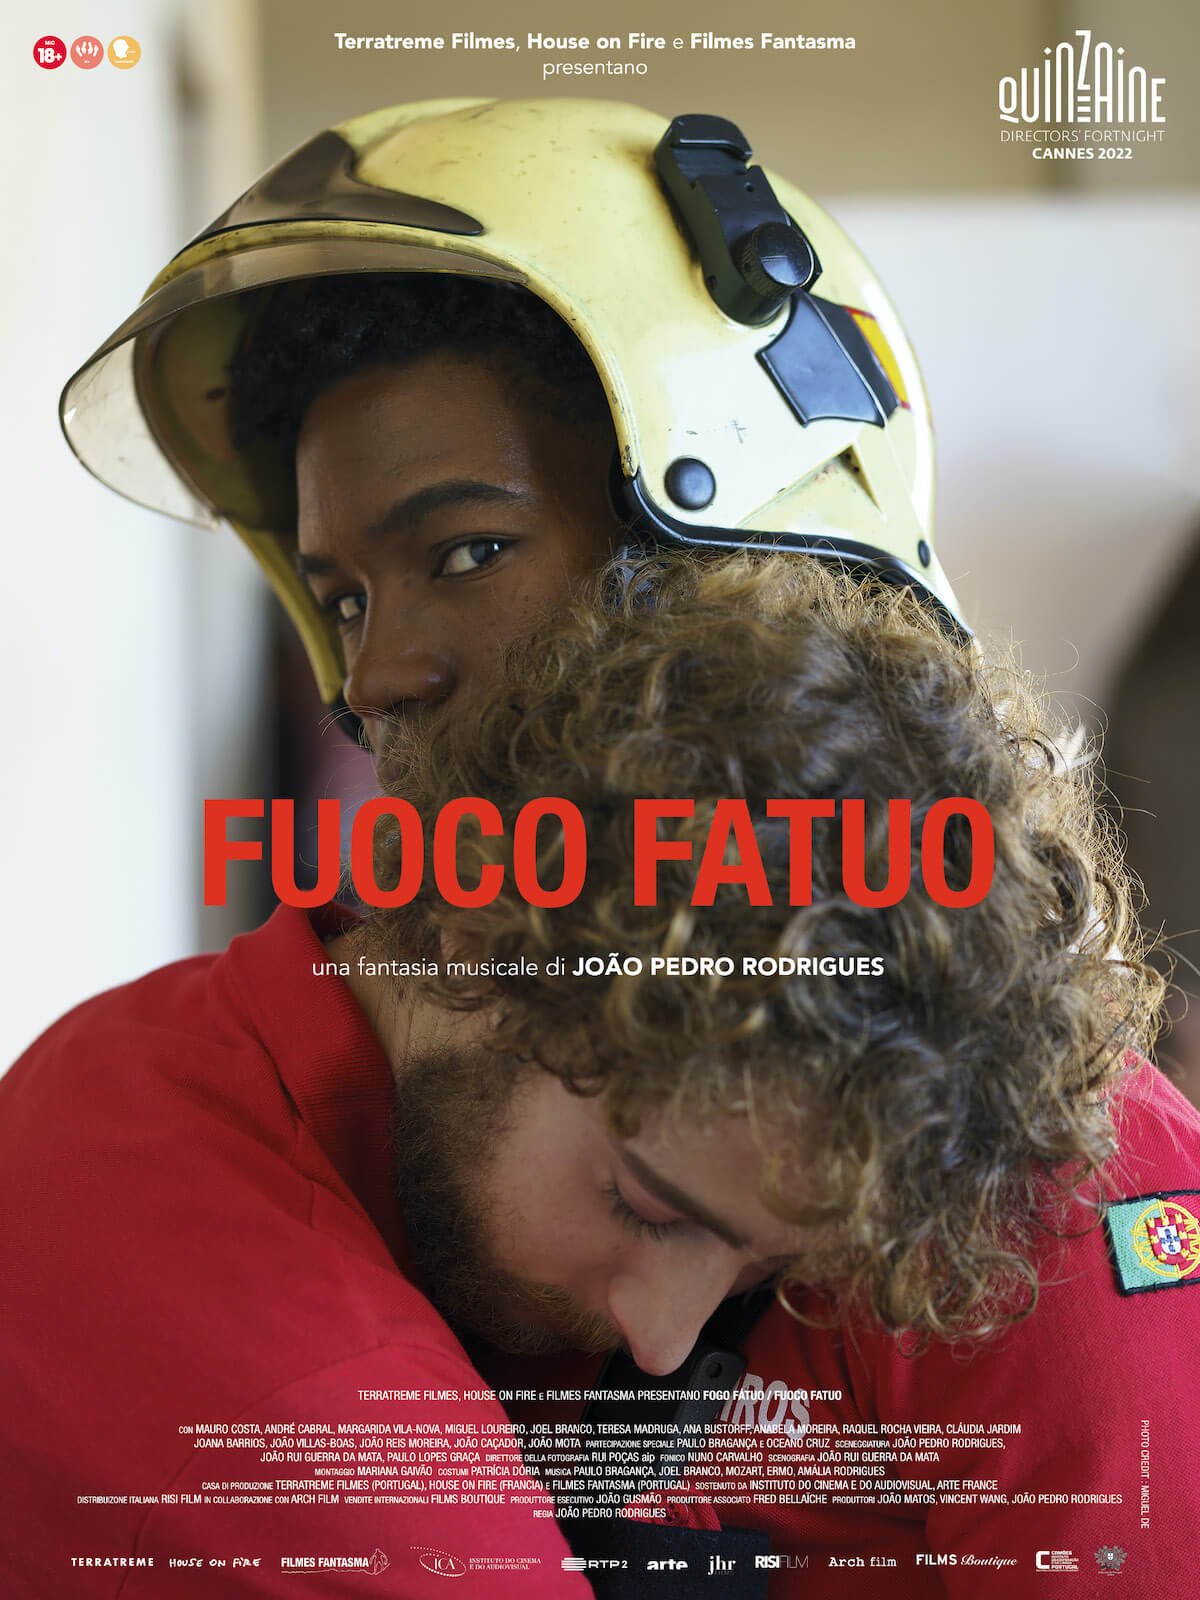 Fuoco Fatuo, arriva nei cinema il musical queer-erotico di João Pedro Rodrigues - fuoco fatuo poster v2 - Gay.it